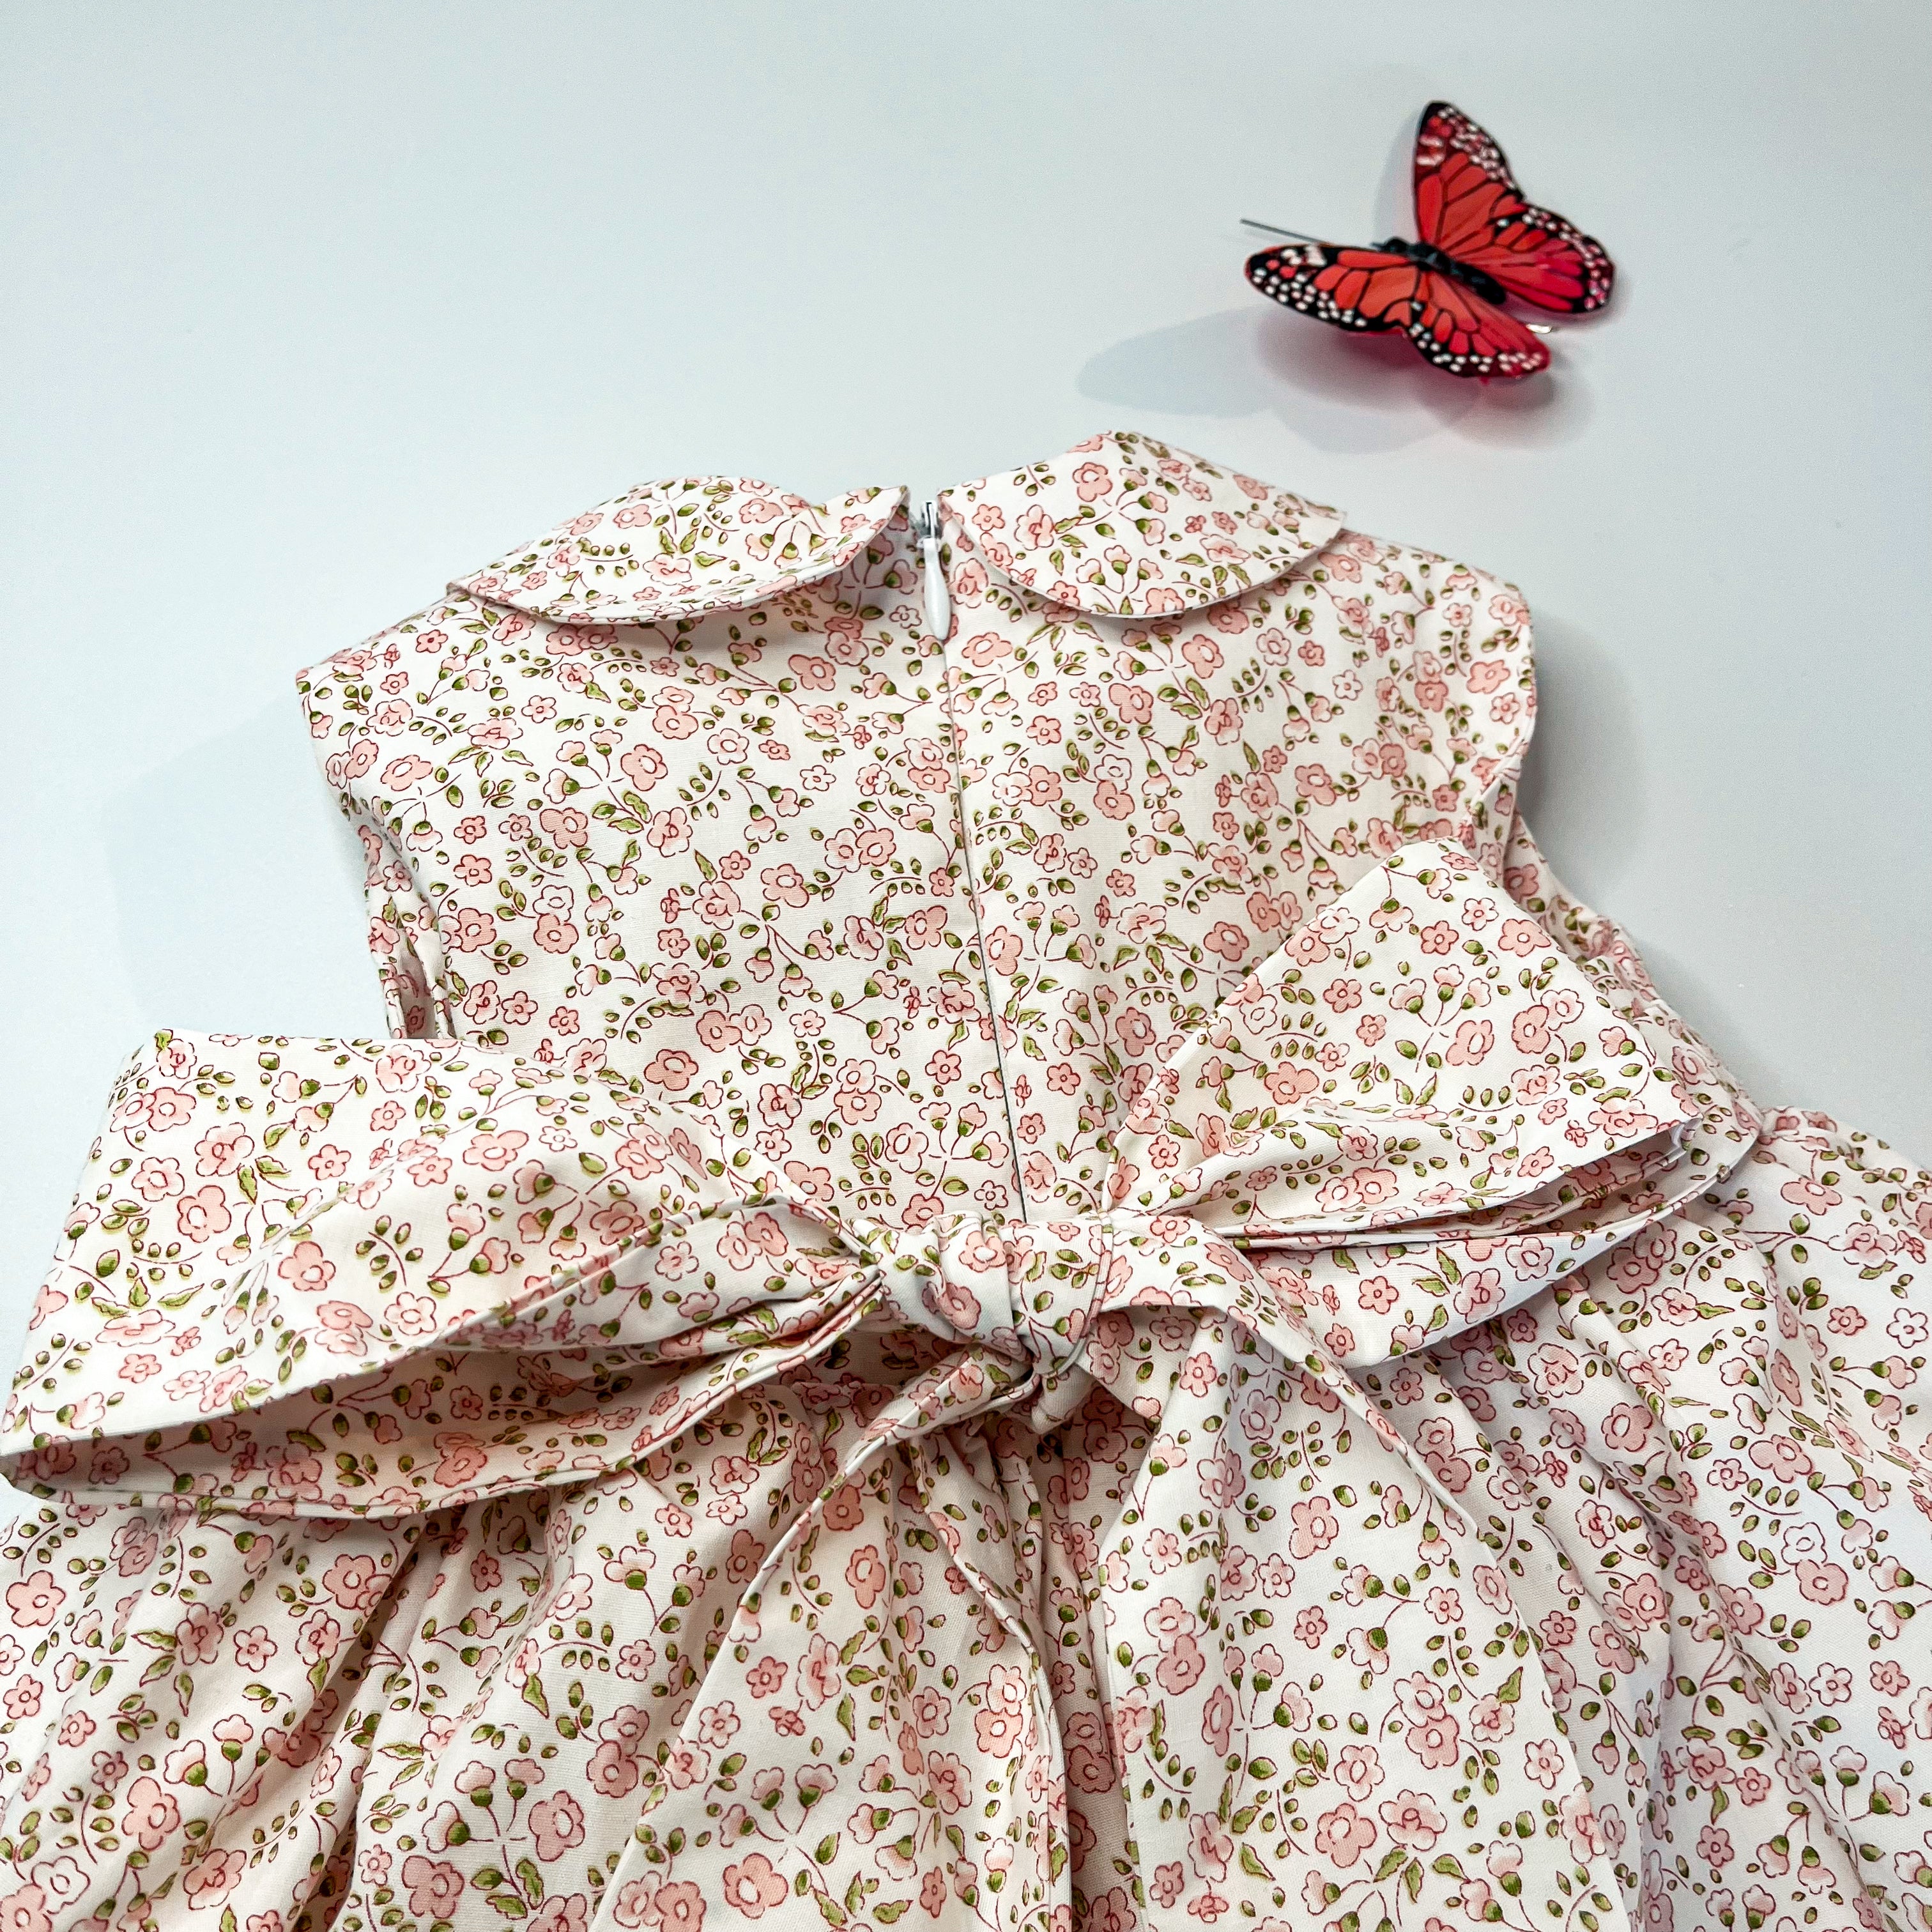 Dress - Lottie Floral